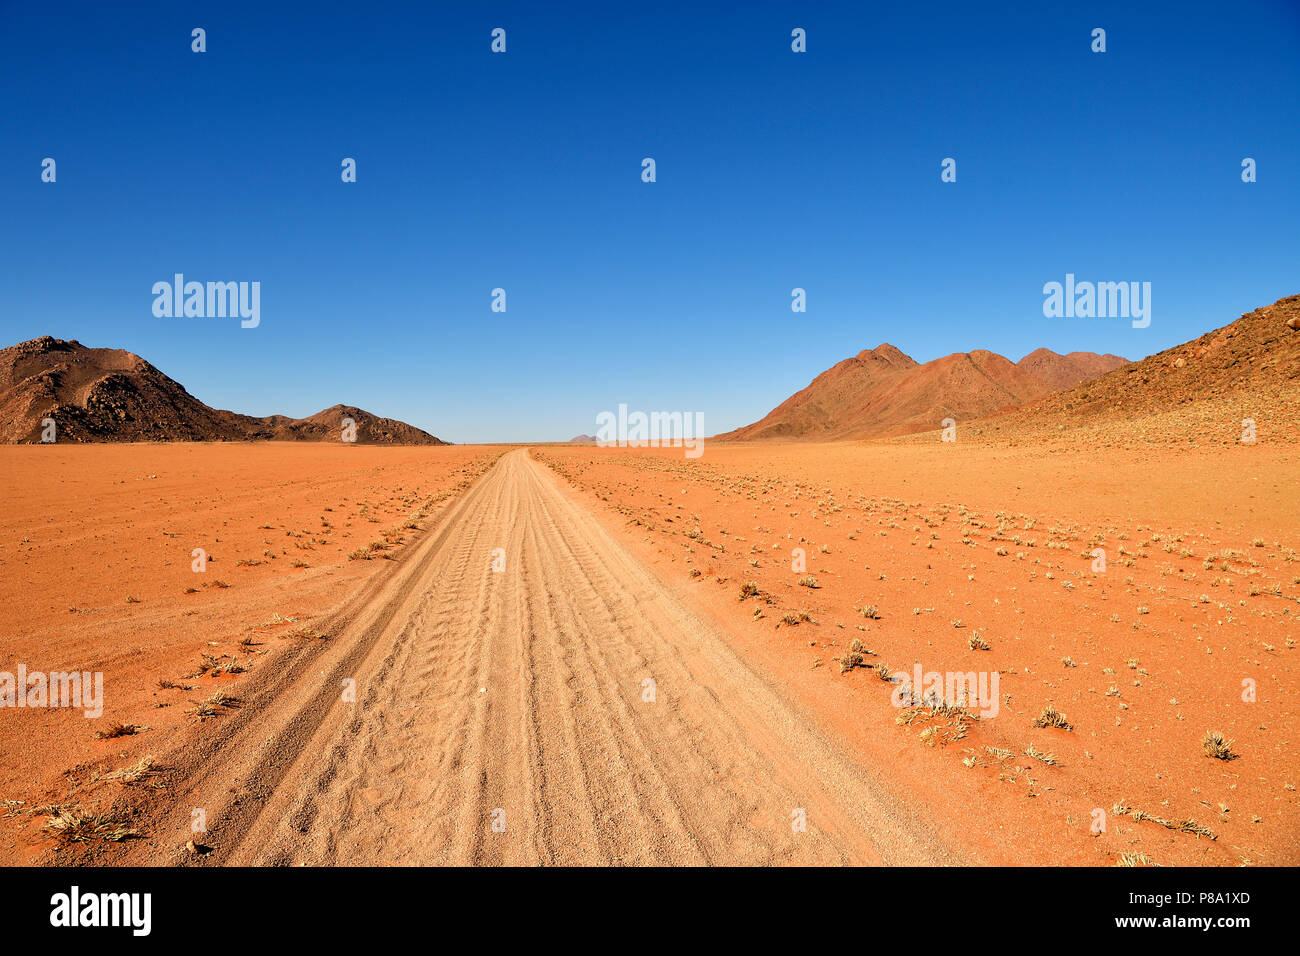 Sandtrack through the Tiras Mountains, Namibia Stock Photo